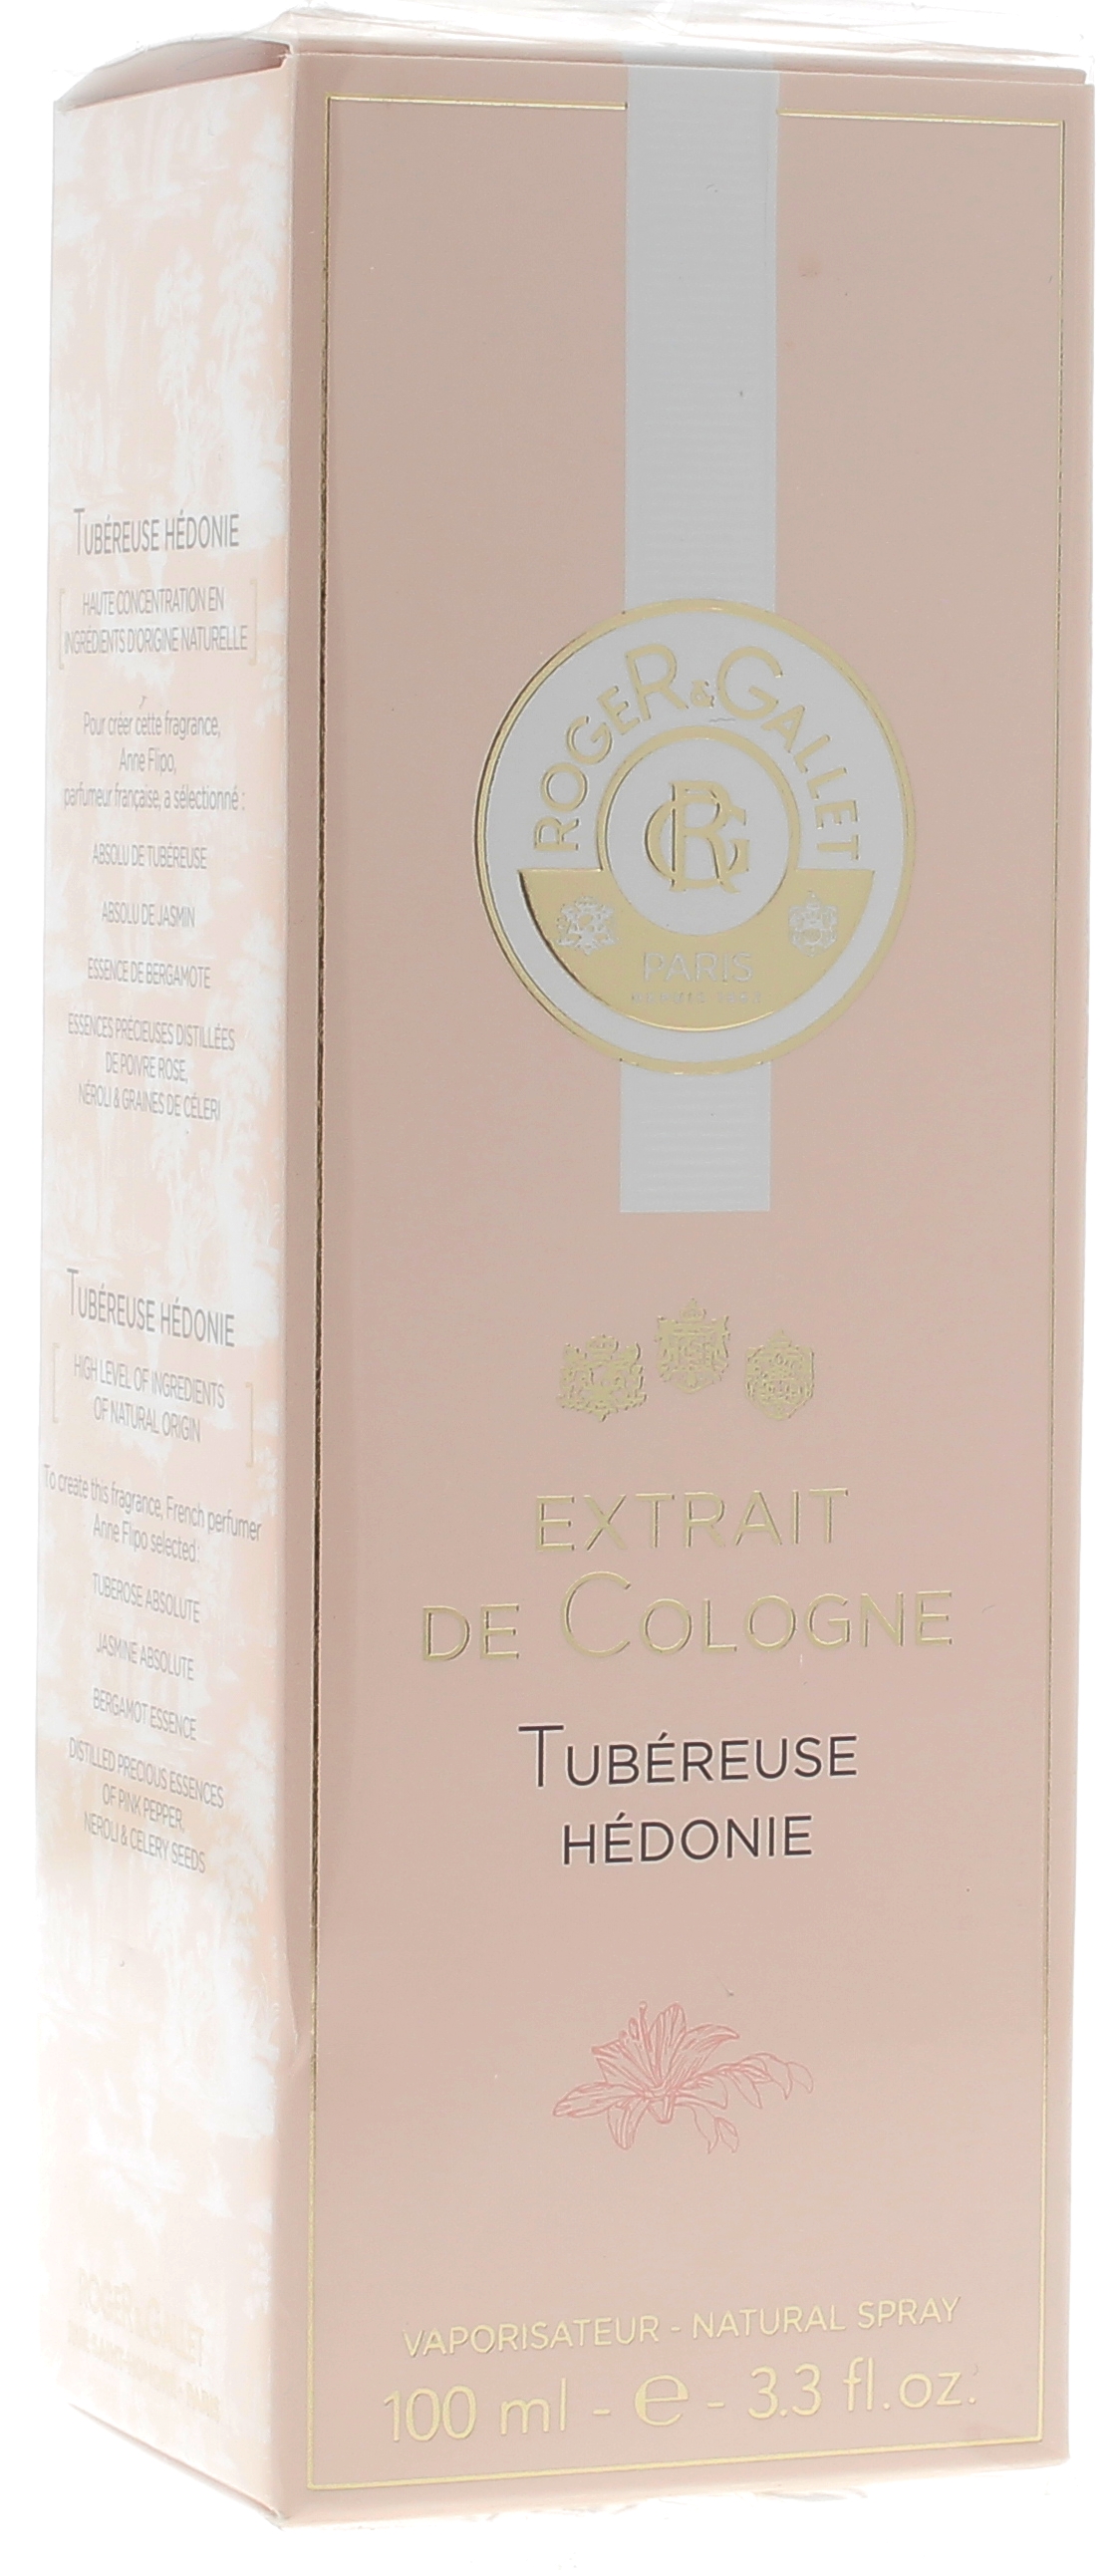 Extrait de cologne Tubéreuse hédonie Roger & Gallet - Spray de 100 ml